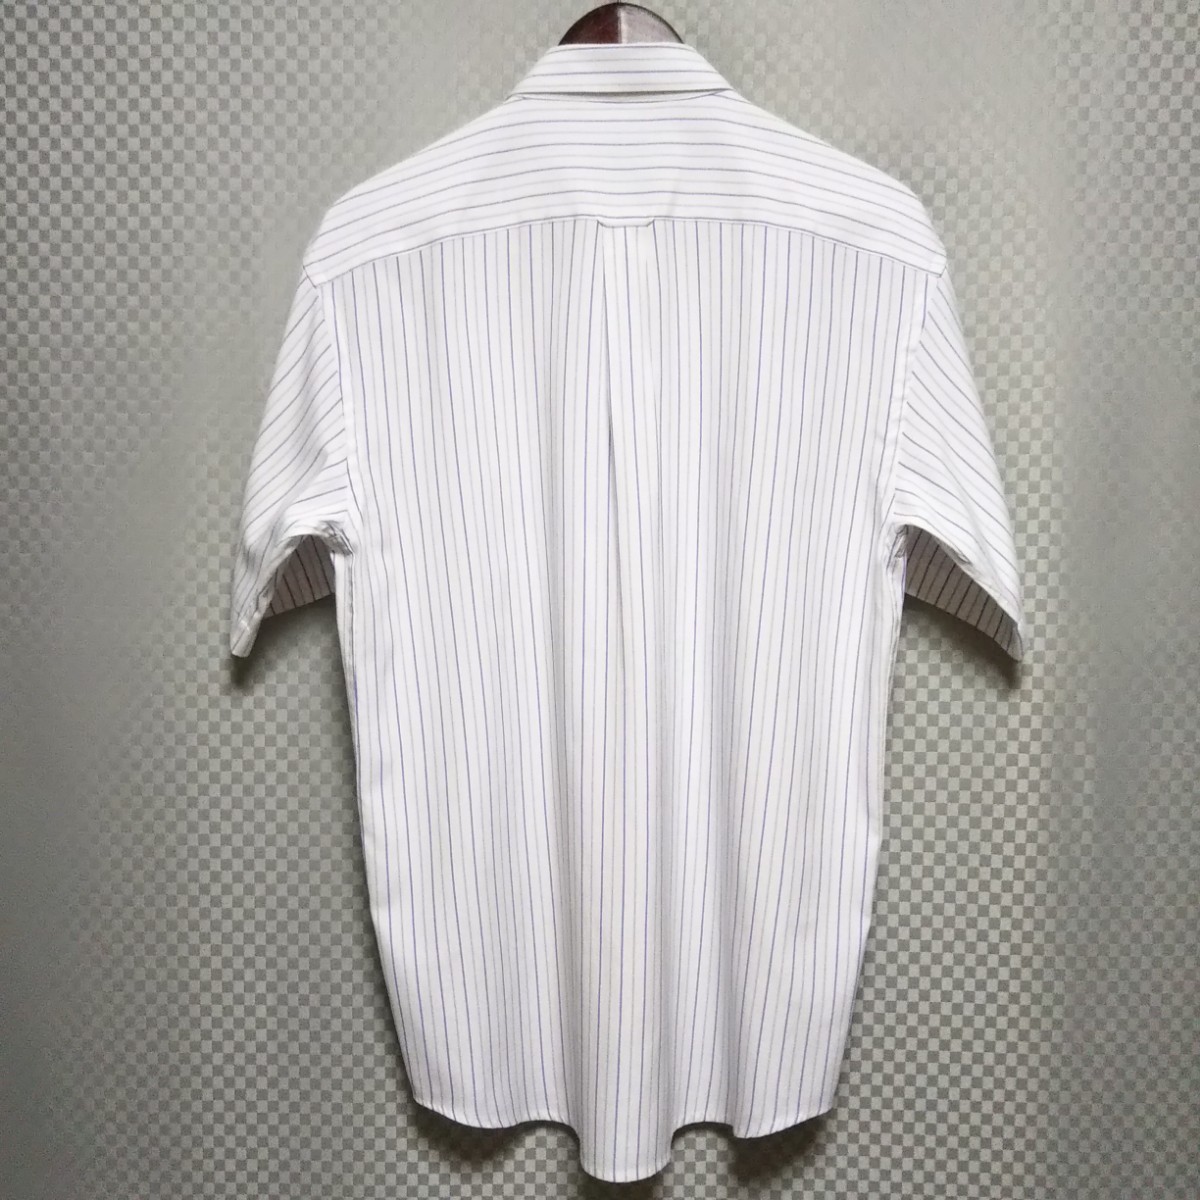 ラルフローレン☆ハーフボタンダウンシャツ 半袖 ストライプ柄 XL 白×青×灰